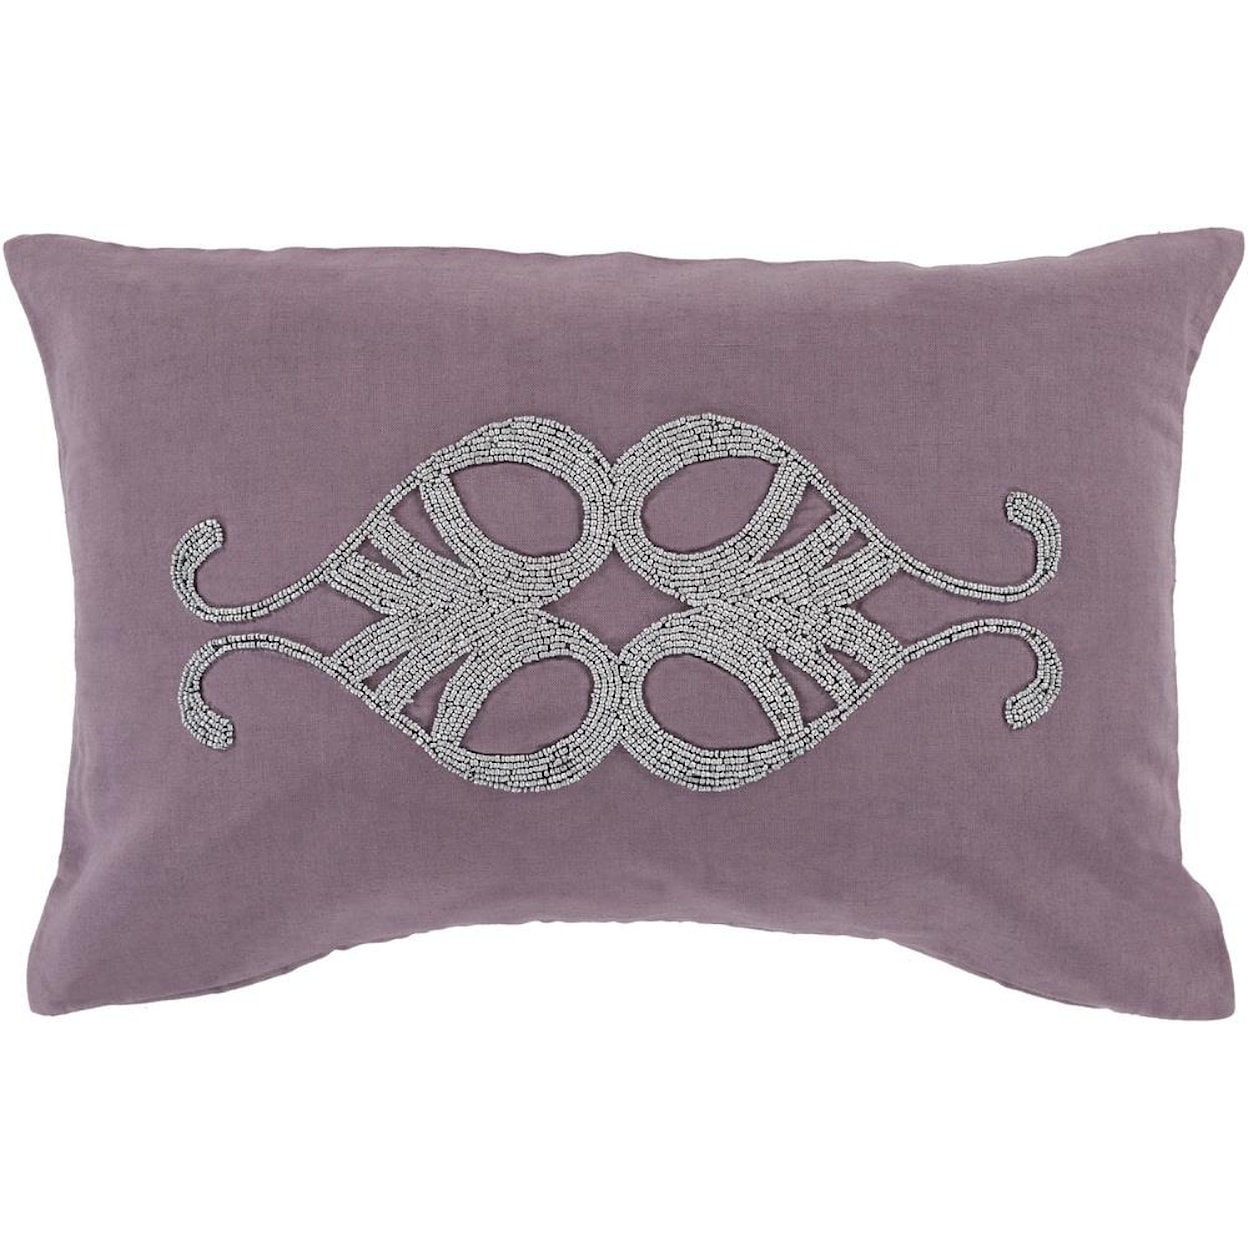 Surya Pillows 13" x 20" Decorative Pillow